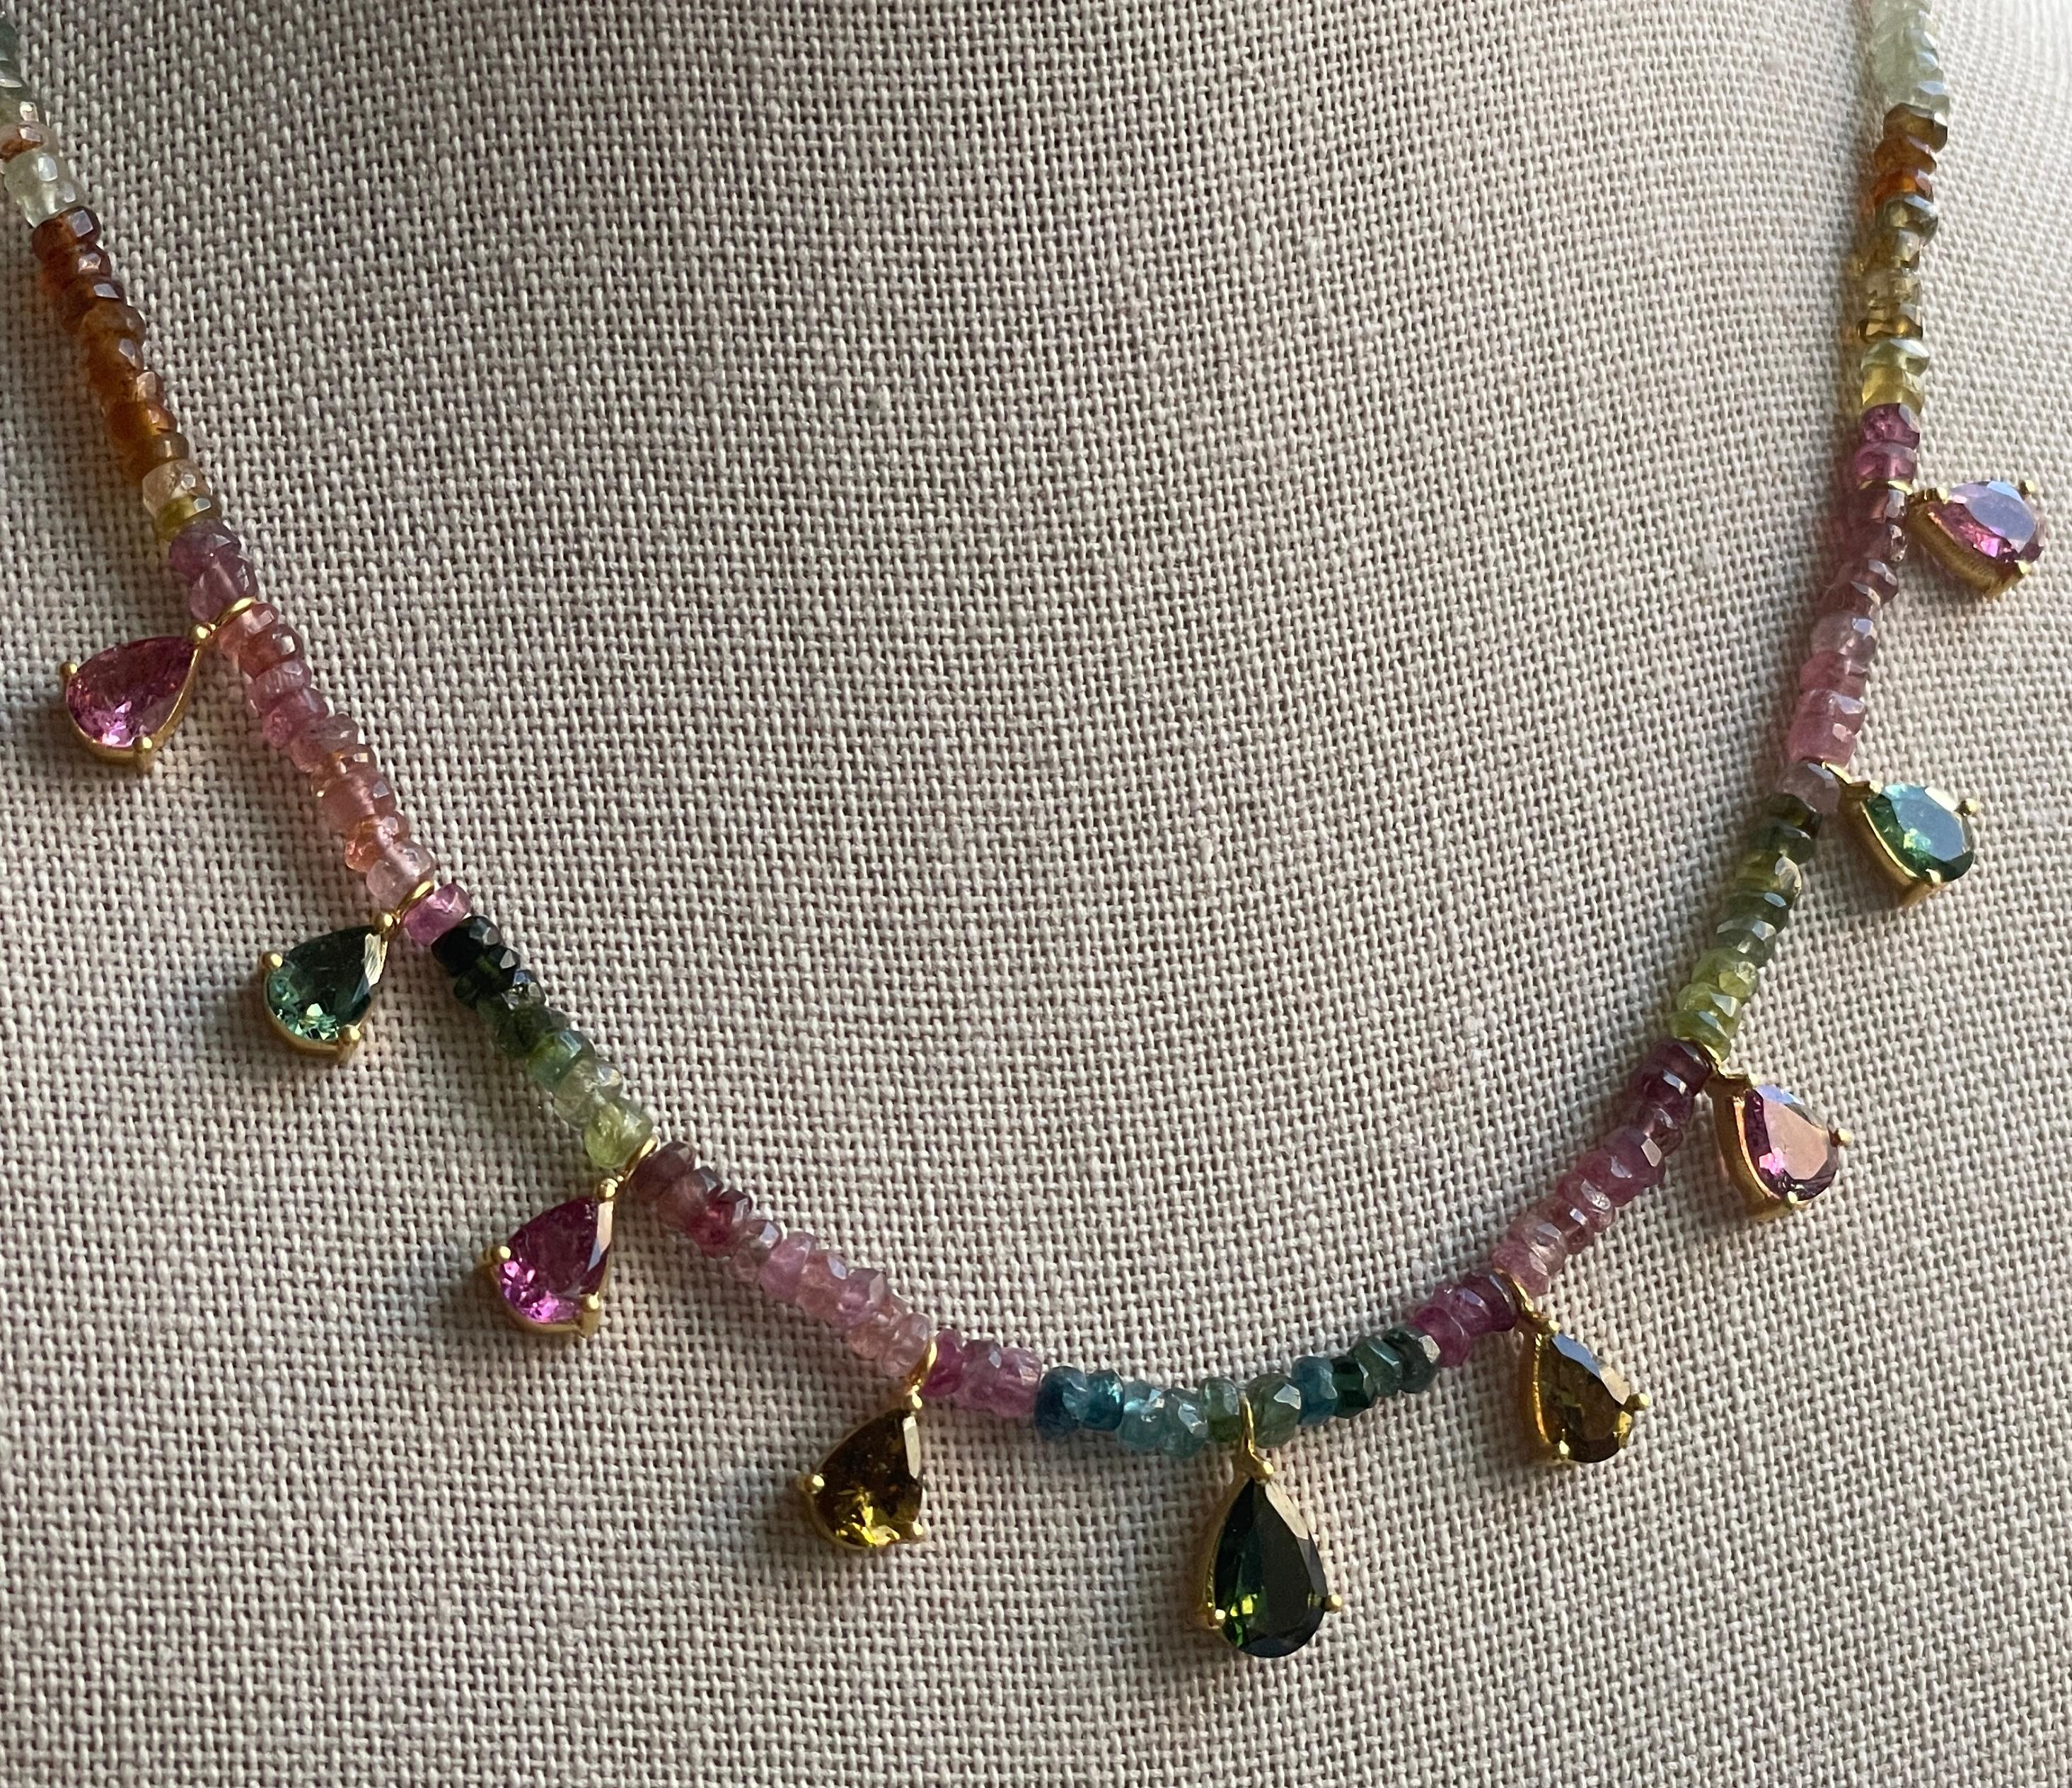 Diese Halskette besteht aus 9 Turmalinbirnen in allen Farben, darunter Rosa, Salbeigrün, Bernstein und Jägergrün. Der Turmalin ist ein magischer Stein, den es in vielen verschiedenen Farbtönen gibt. Die Perlen auf dieser Halskette reichen von